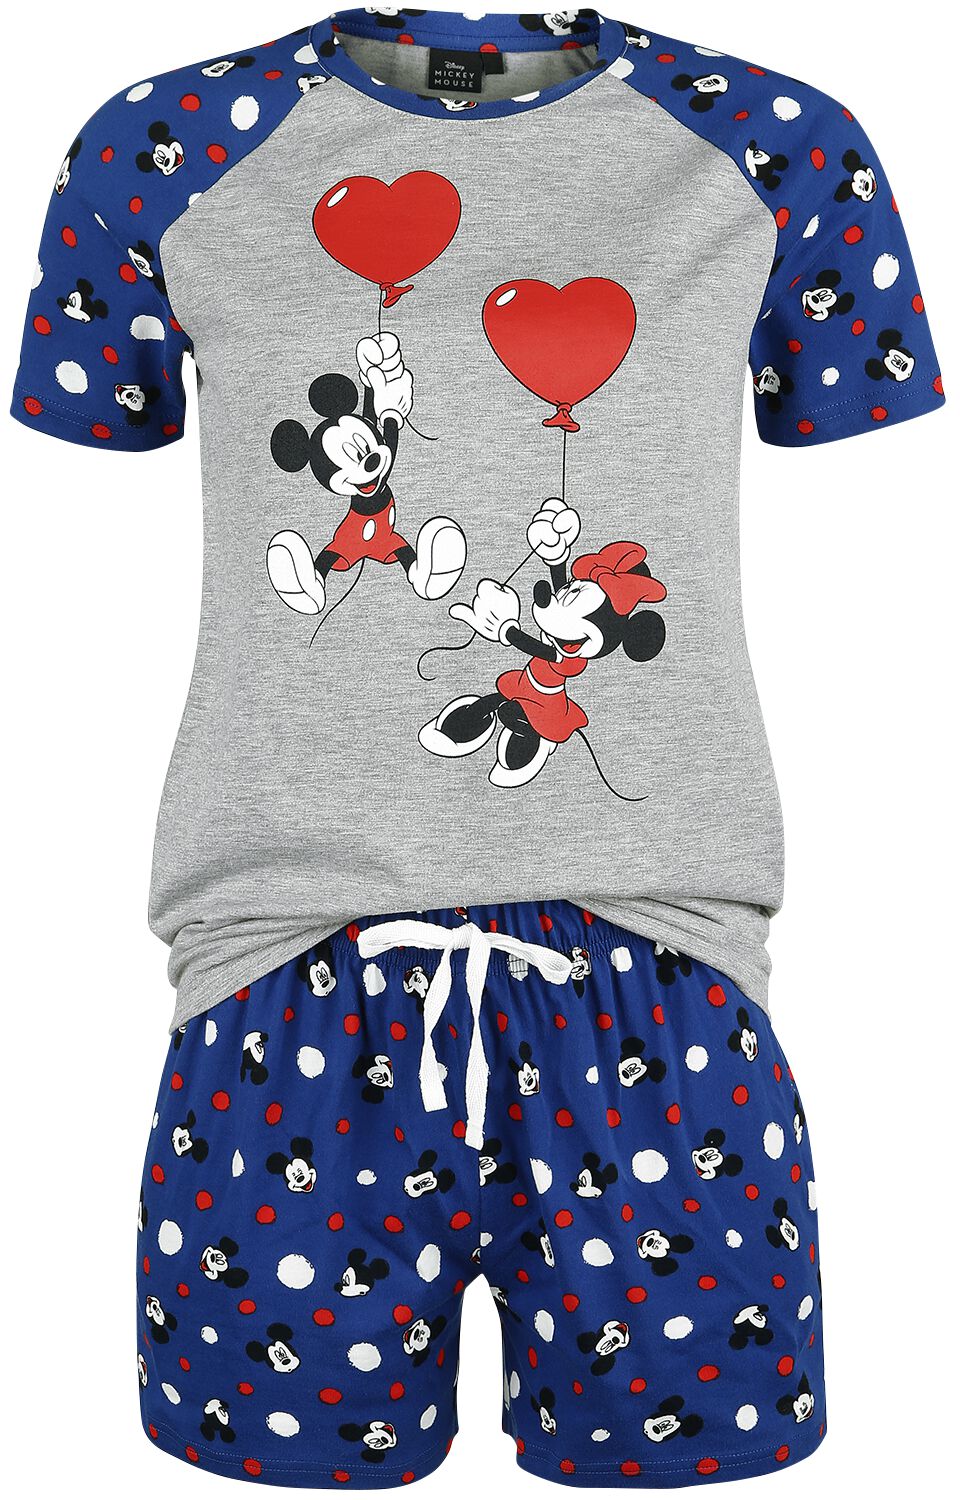 Pyjama Disney de Mickey & Minnie Mouse - Pois - S à XL - pour Femme - bleu/gris